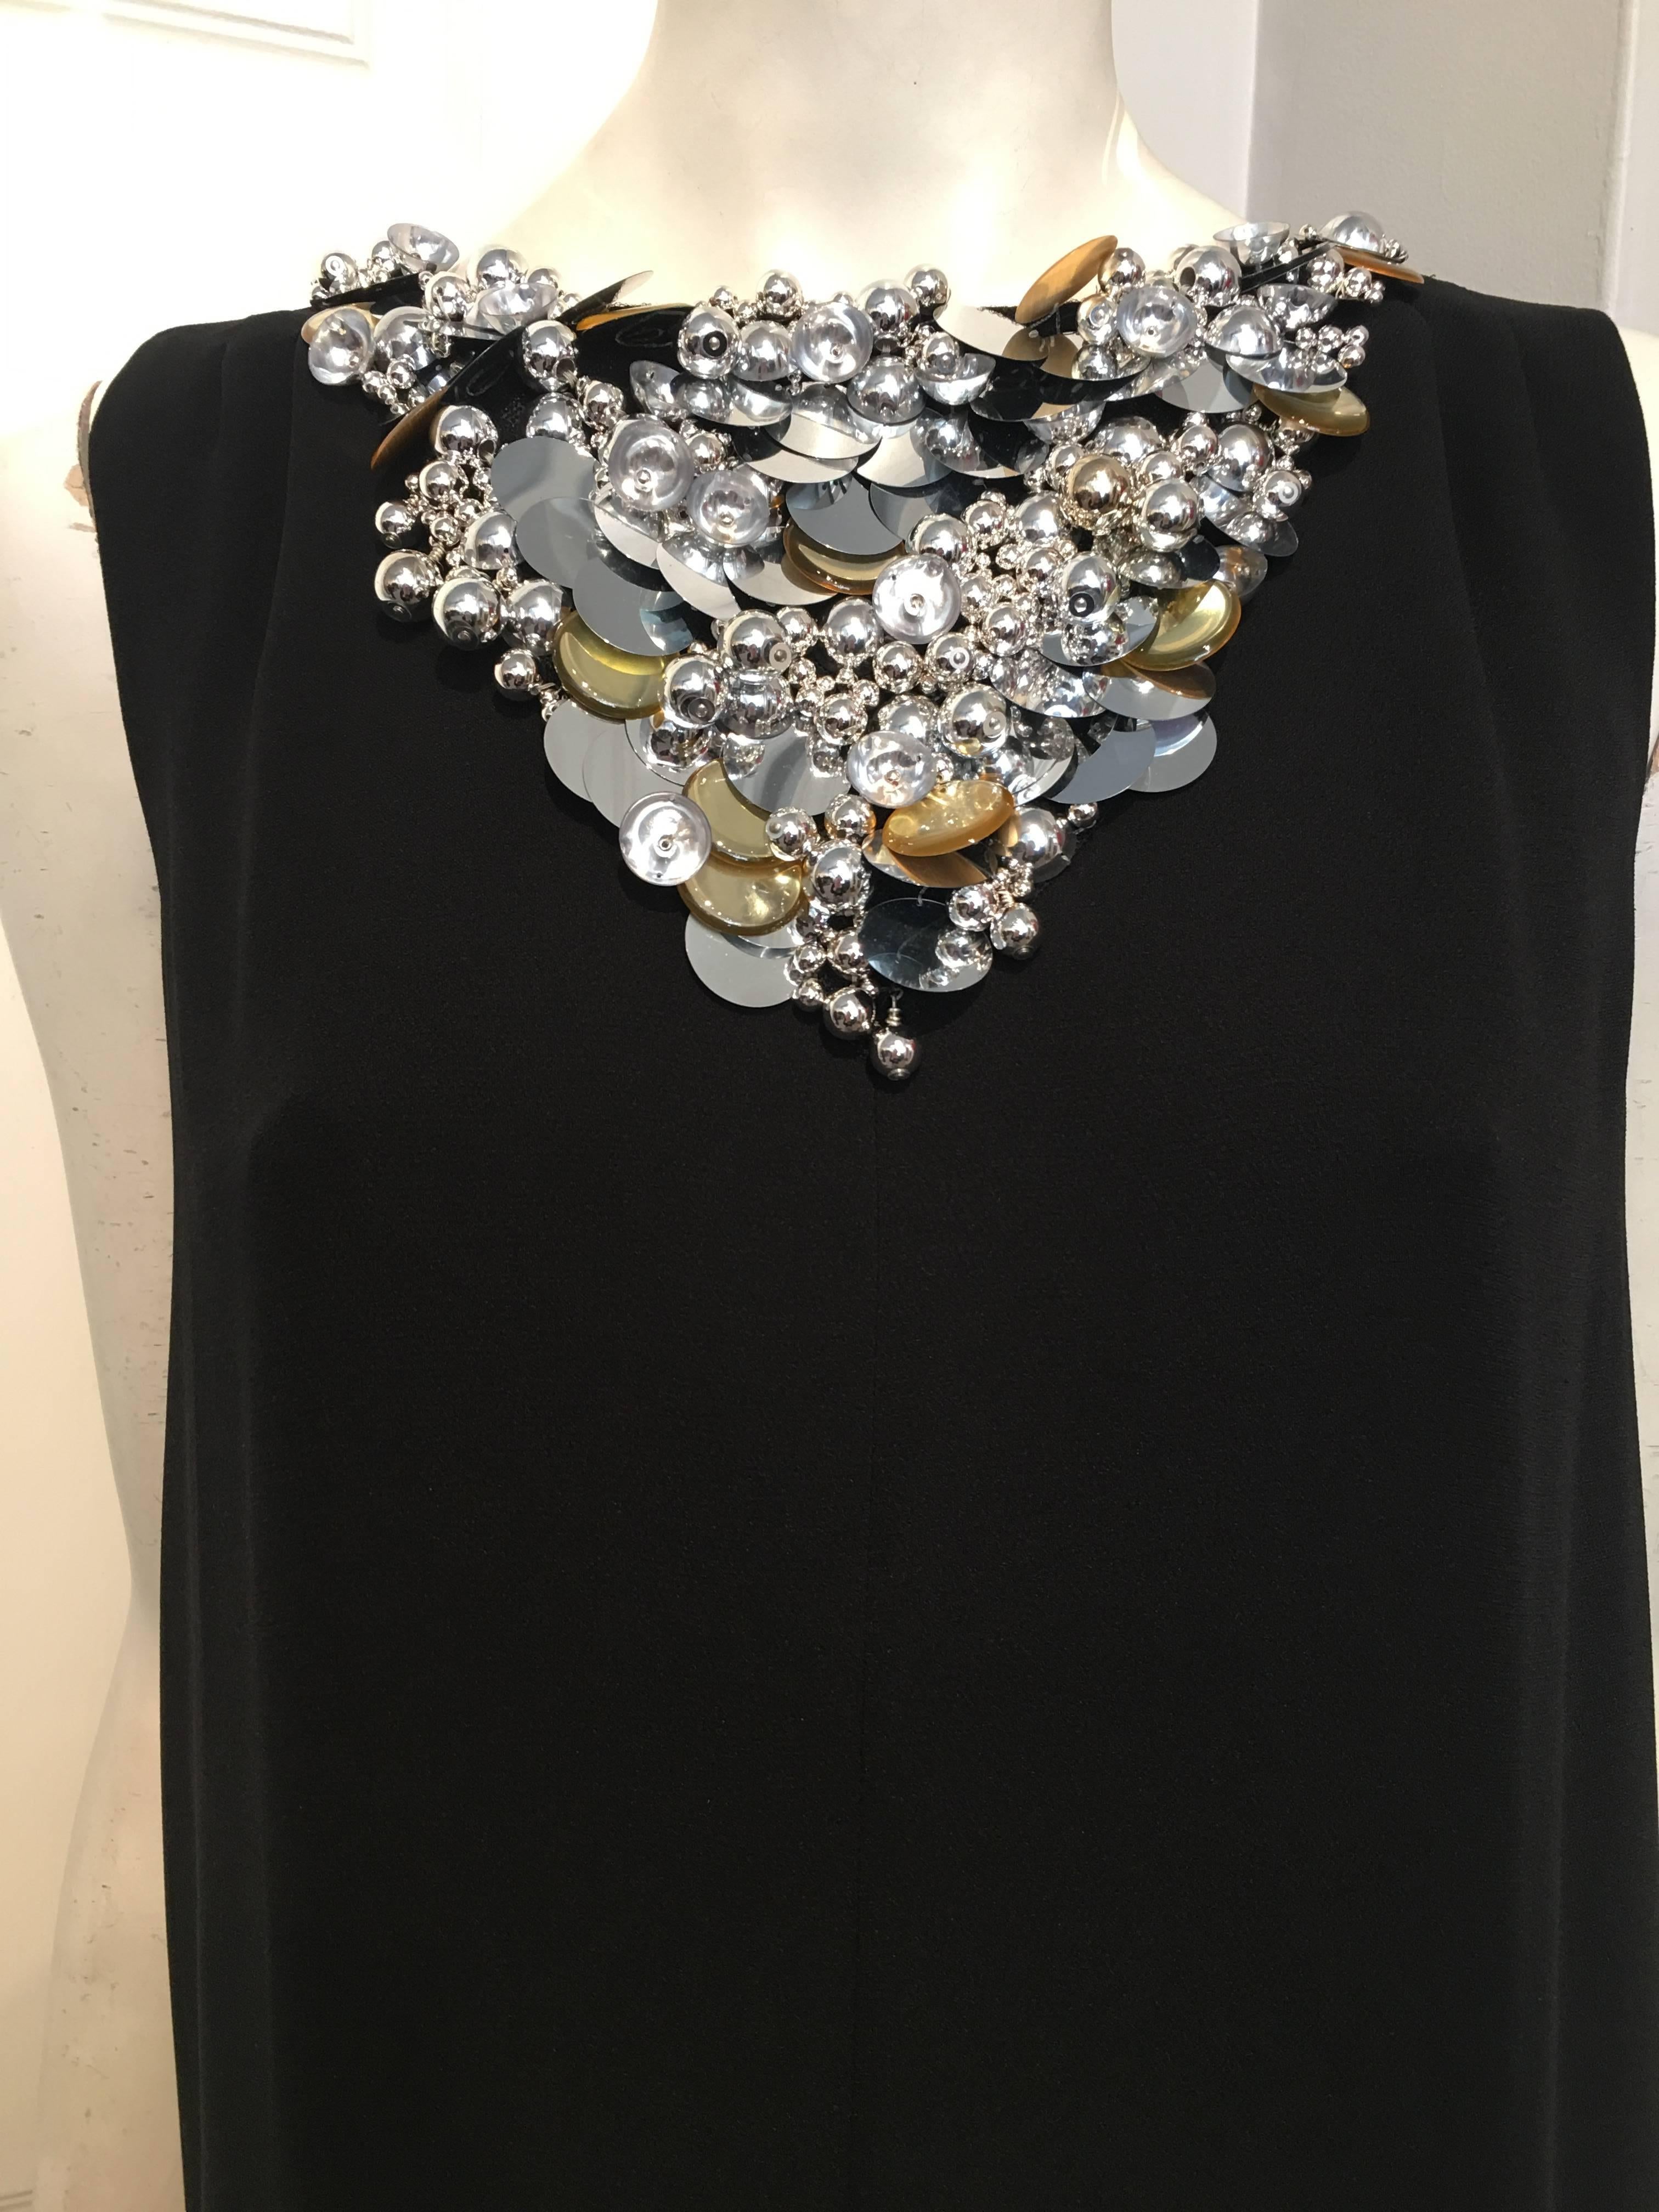 Chanel Embellished Black Cocktail Dress (Resort 2015) Sz 42 (Us 10) For Sale 2